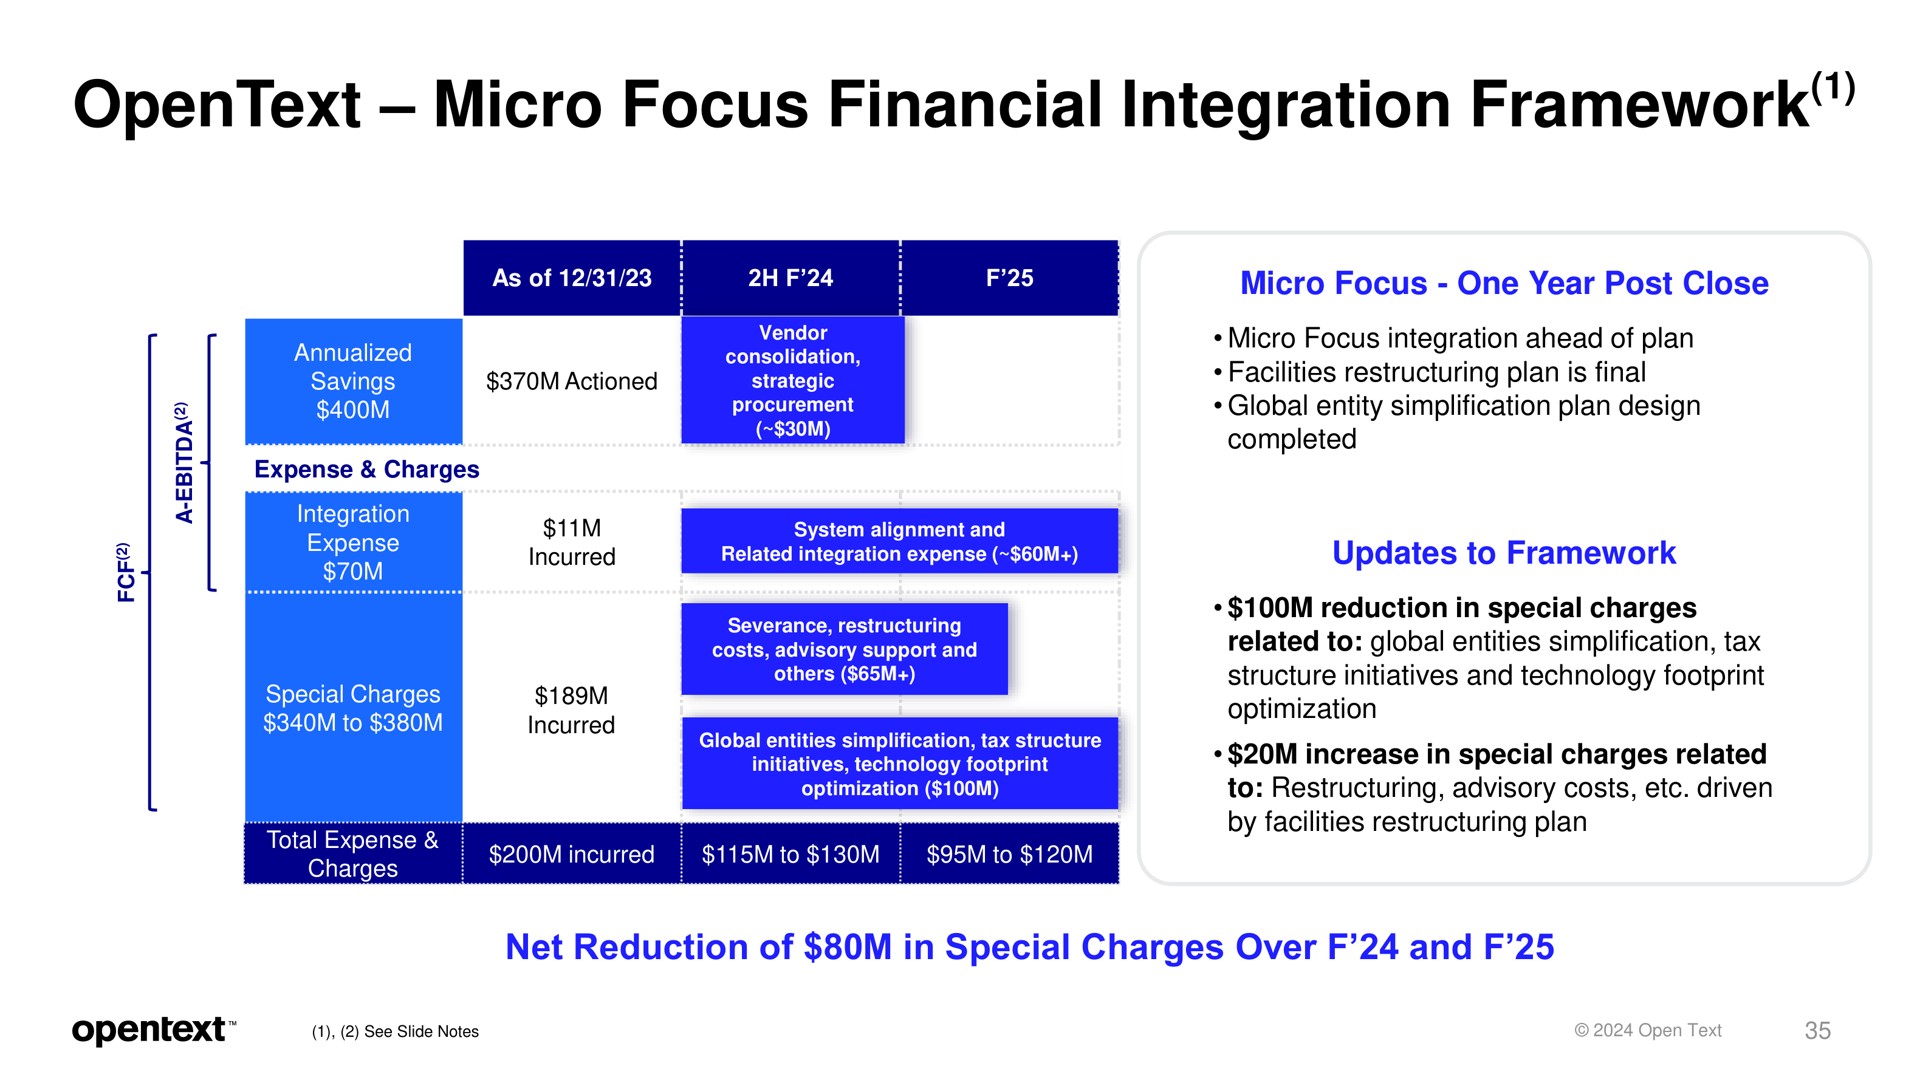 micro focus financial integration framework | OpenText